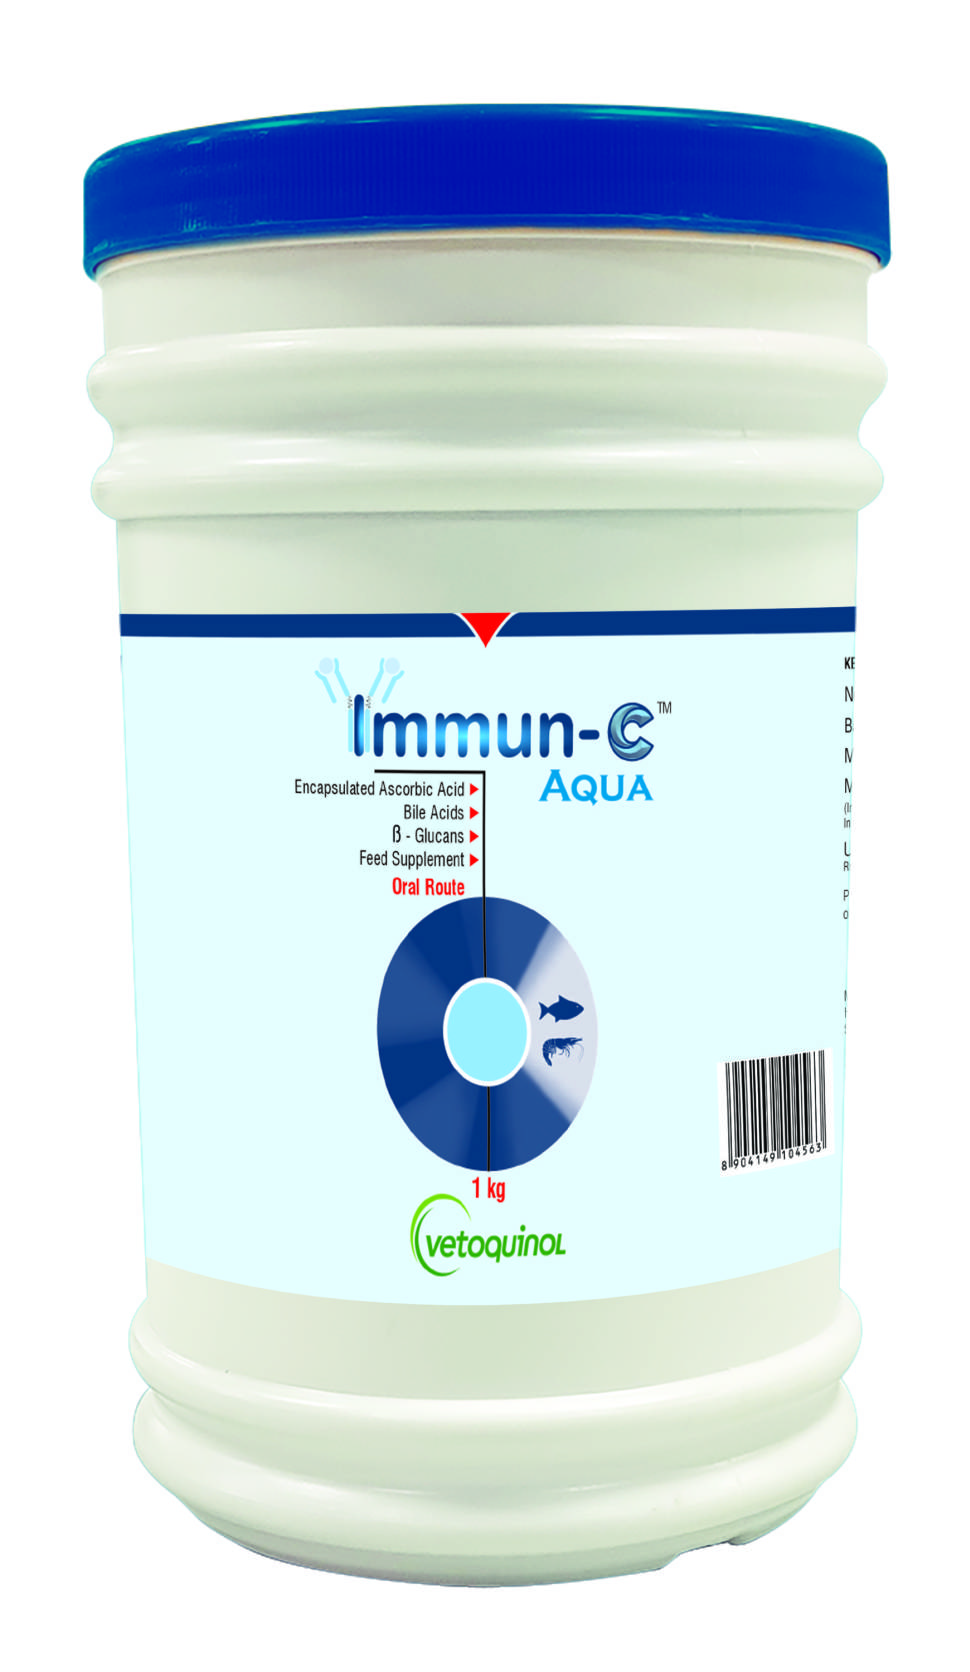 Immun-C Aqua